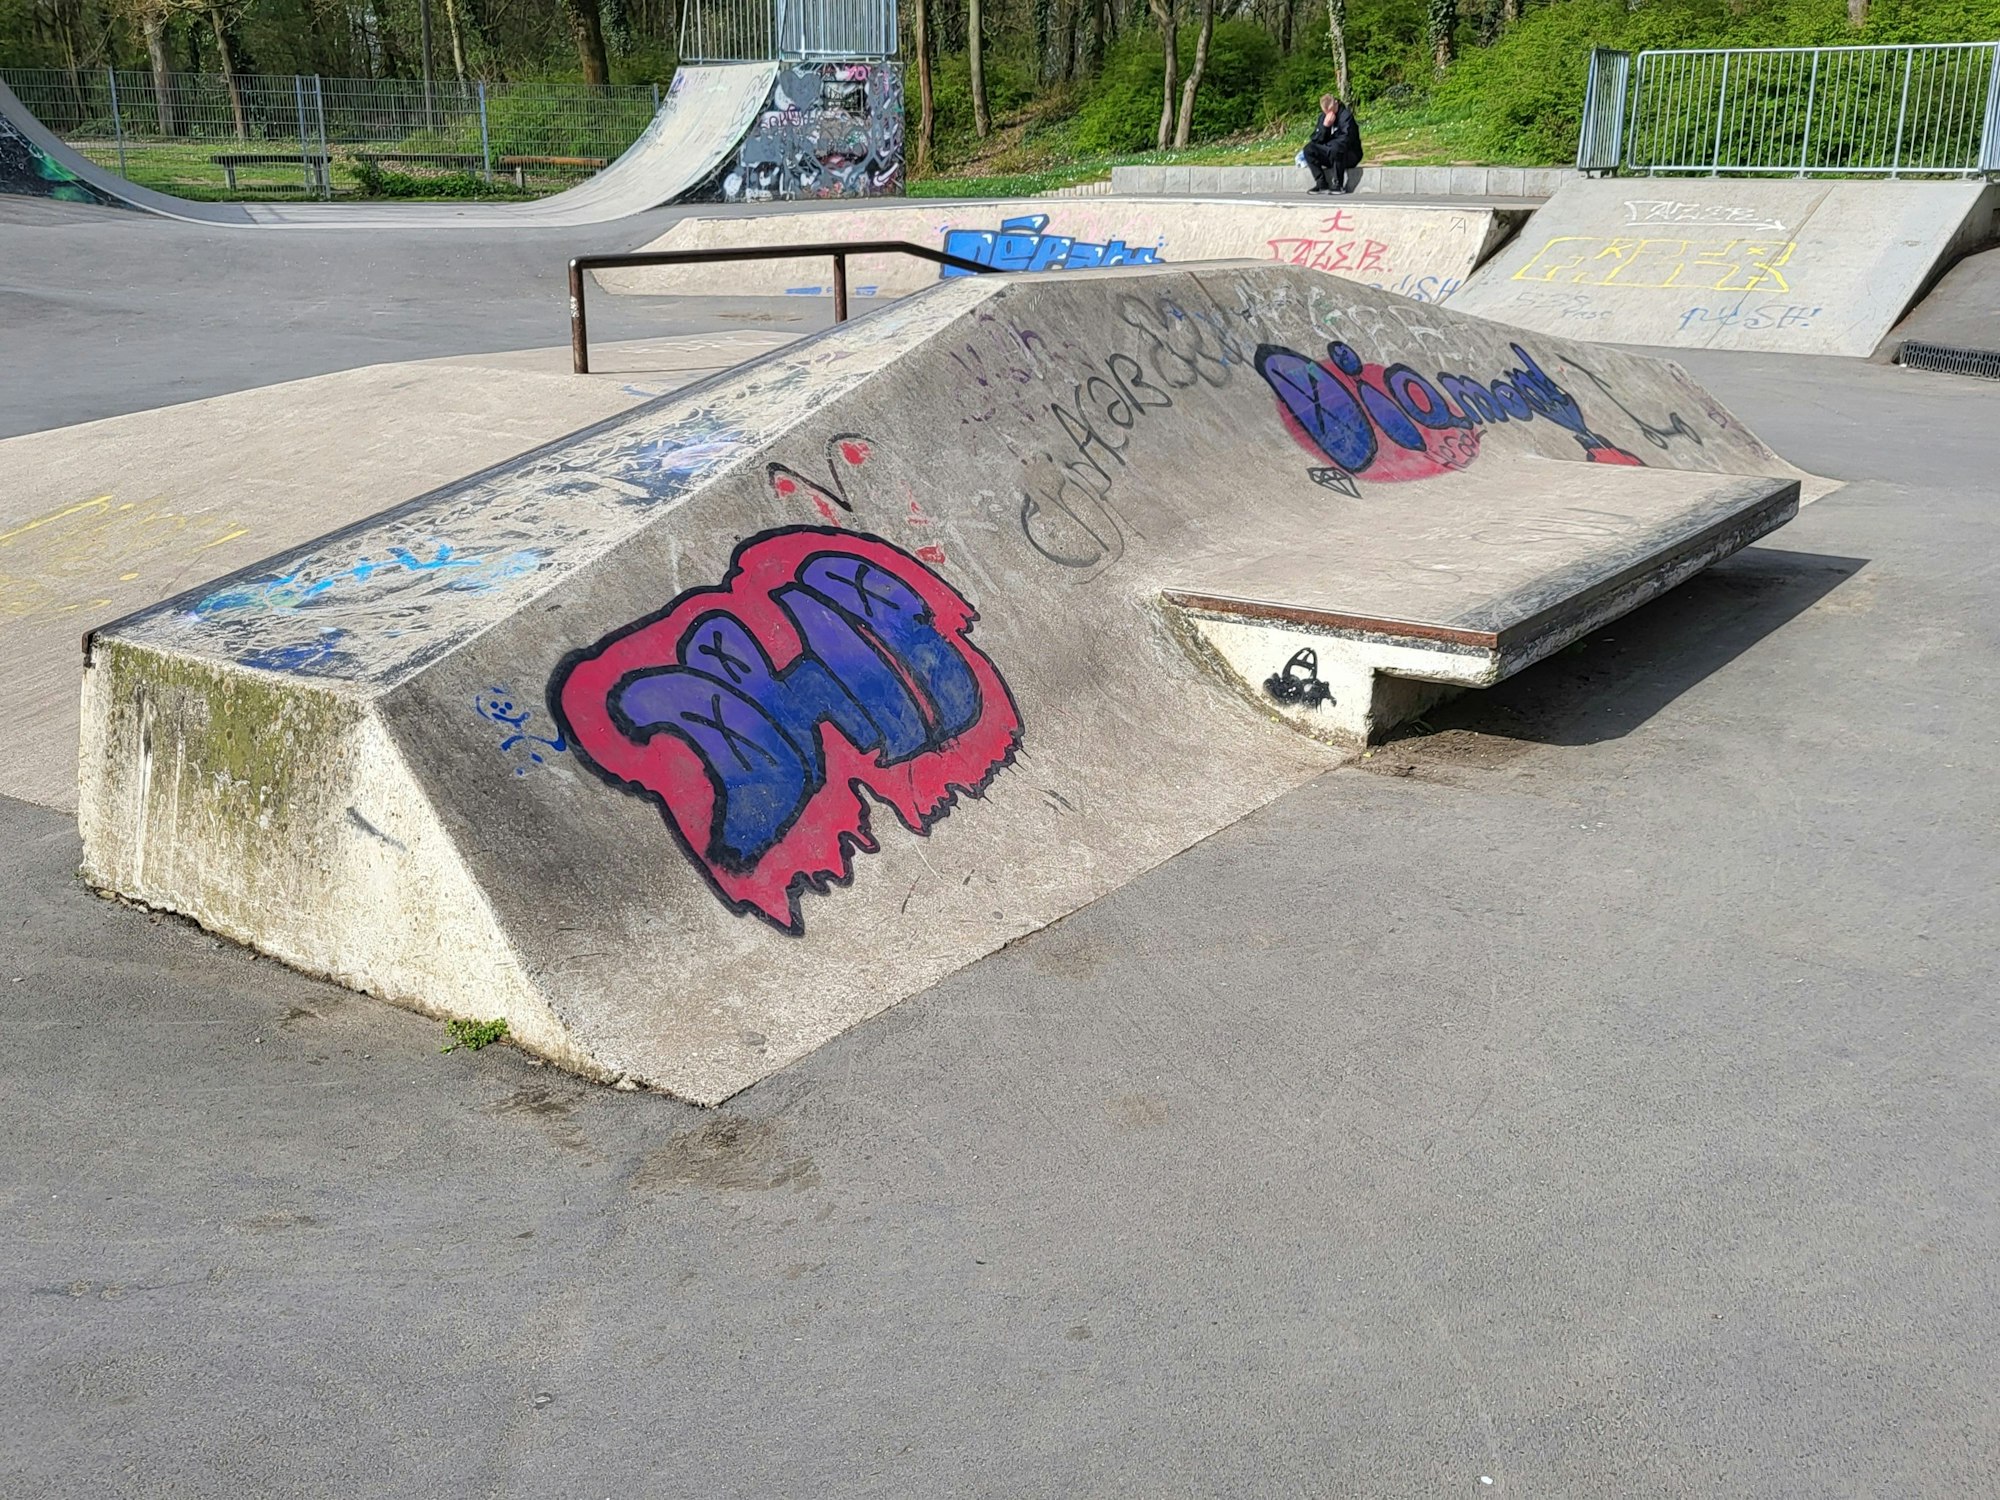 Die Pyramide am Skatepark Troisdorf kann auch über eine Bank mit integrierter Ledge angefahren werden.